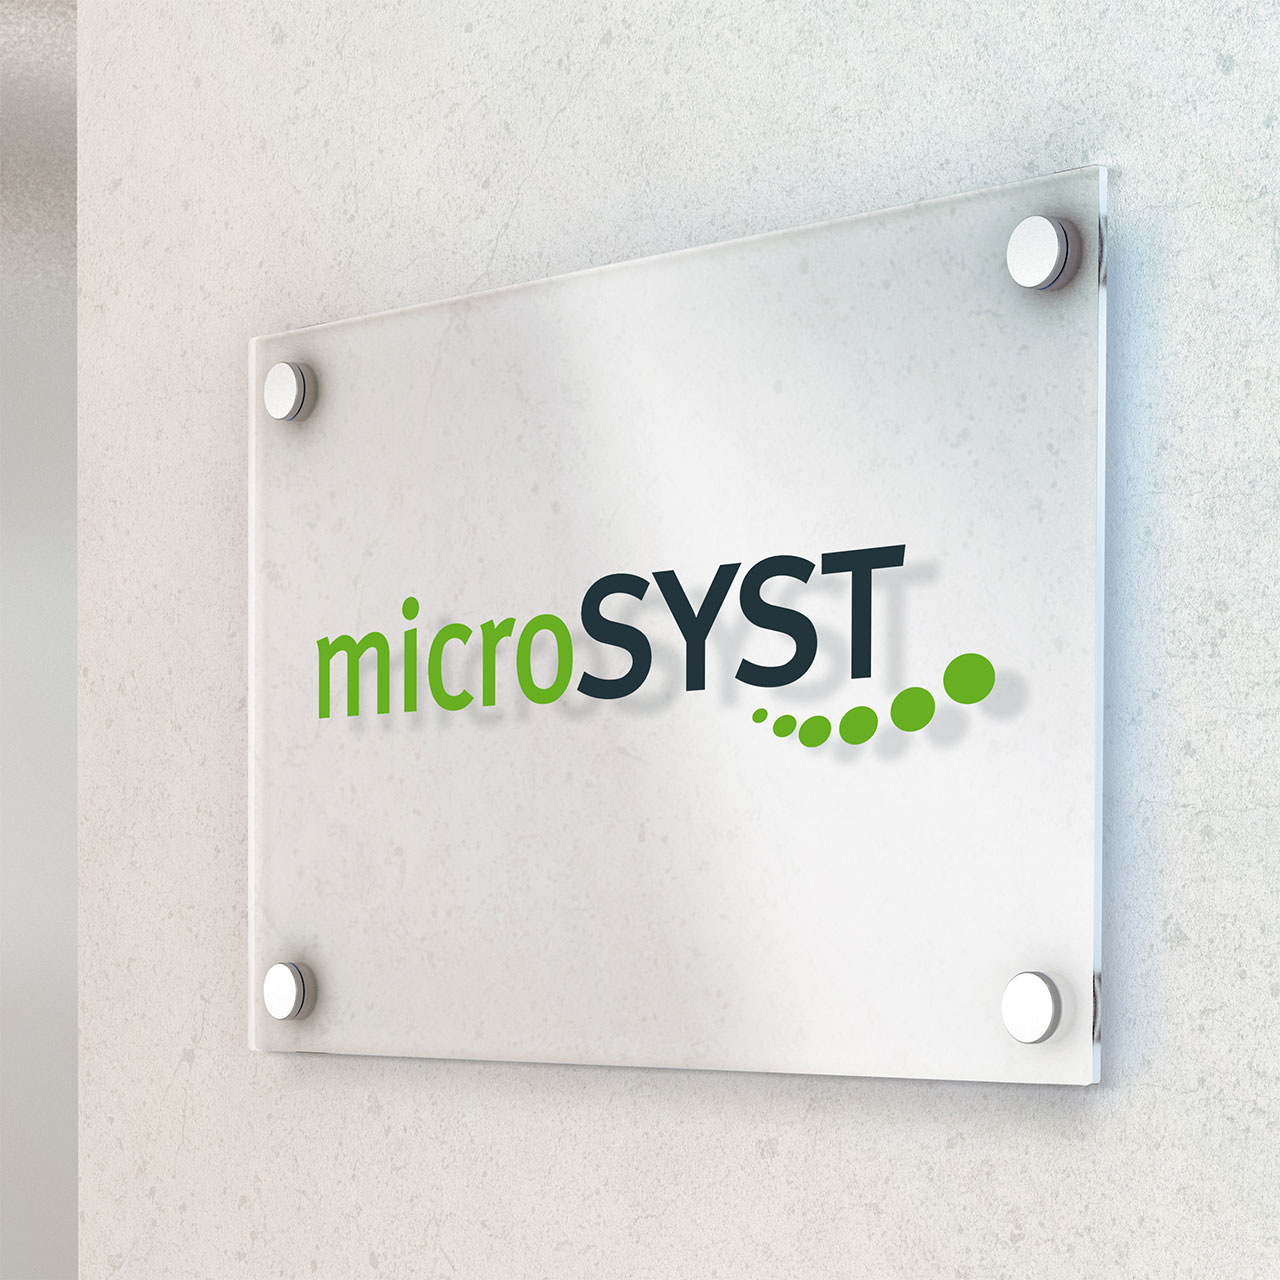 Microsyst ist ein Hersteller von LED Monitoren aus Windischeschenbach.